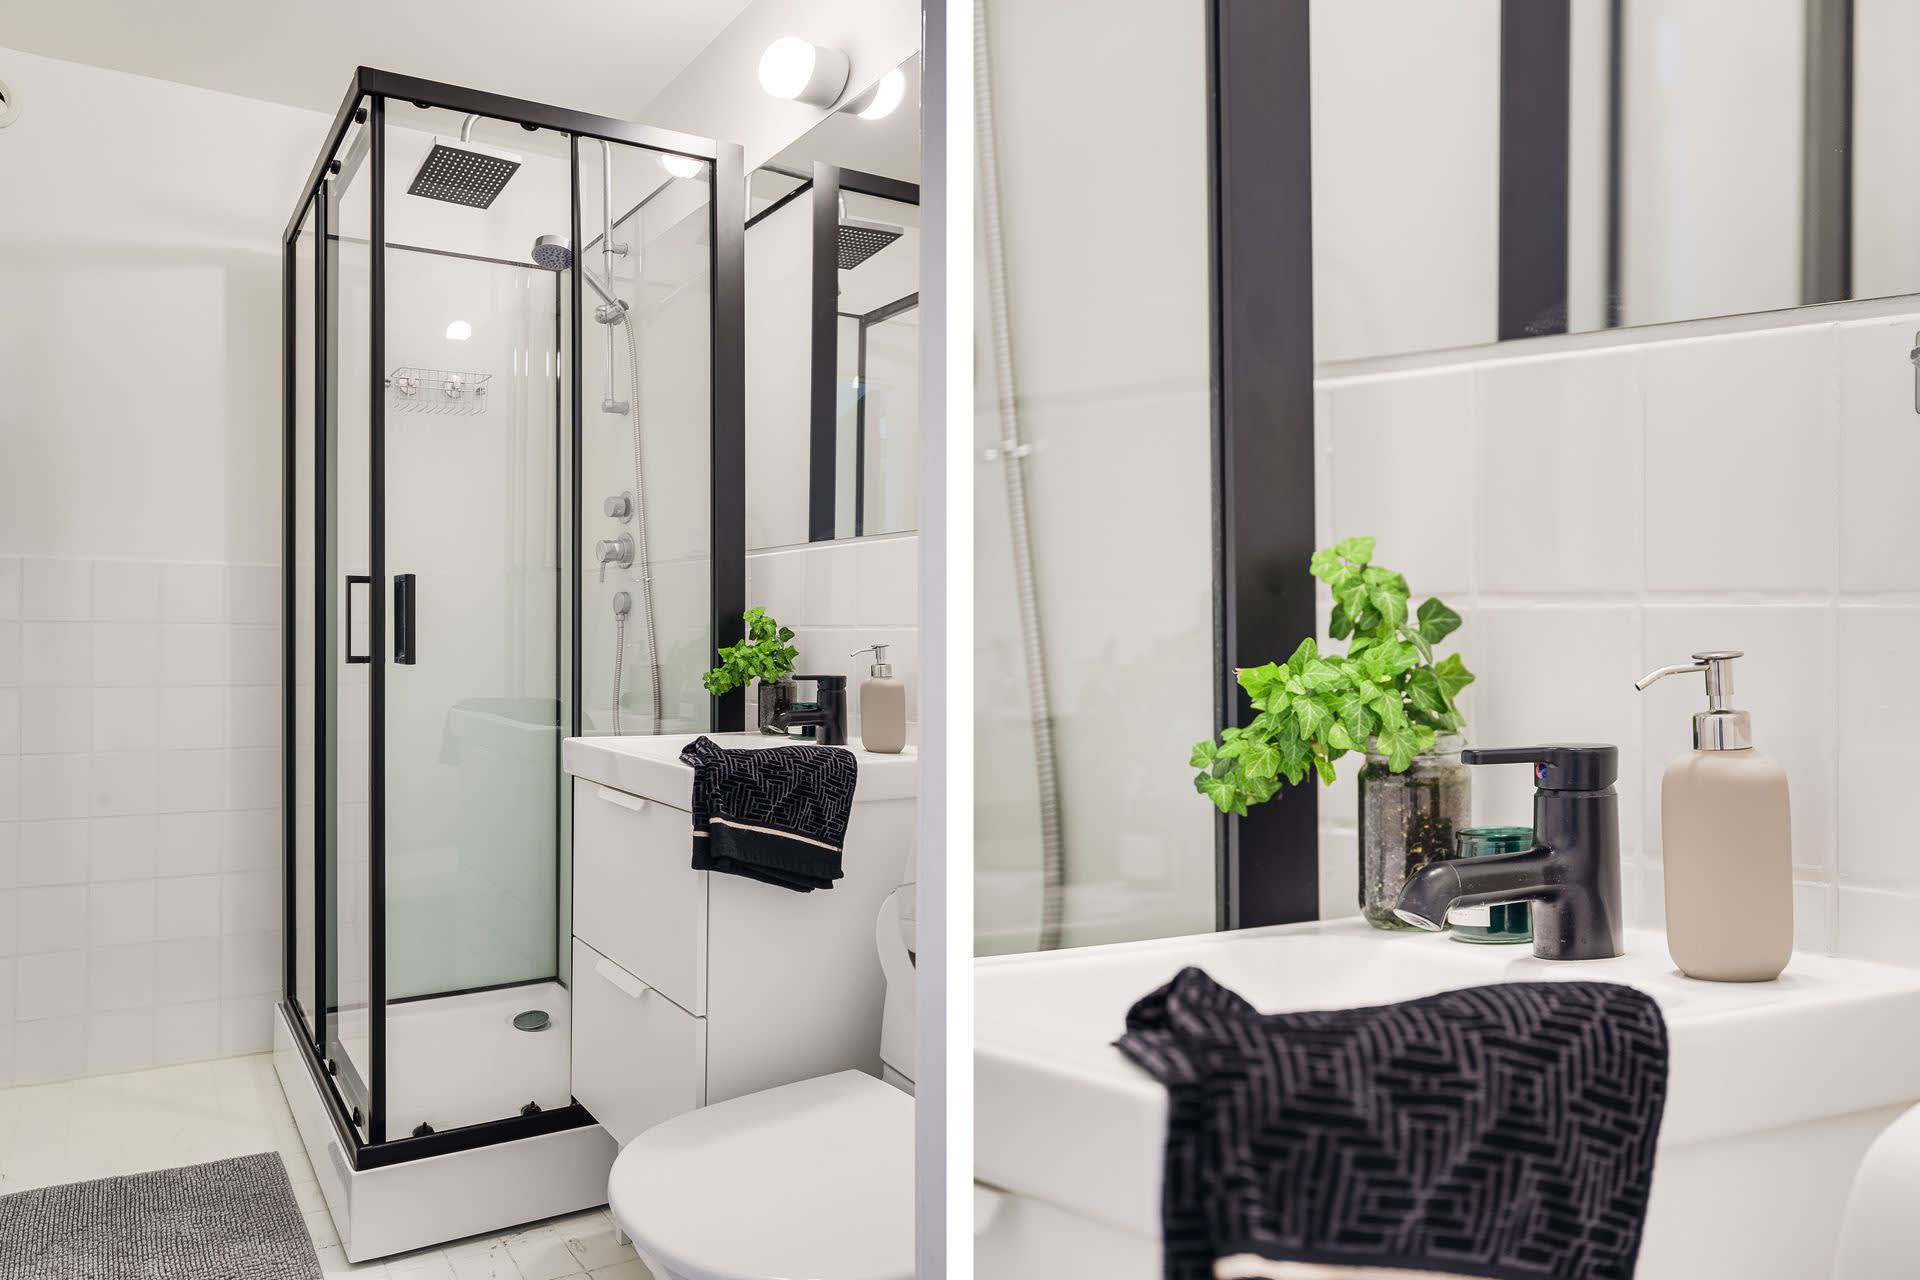 Fräscht badrum med kakel och klinker. Bekvämt med duschkabin och snygga övriga detaljer i svart.